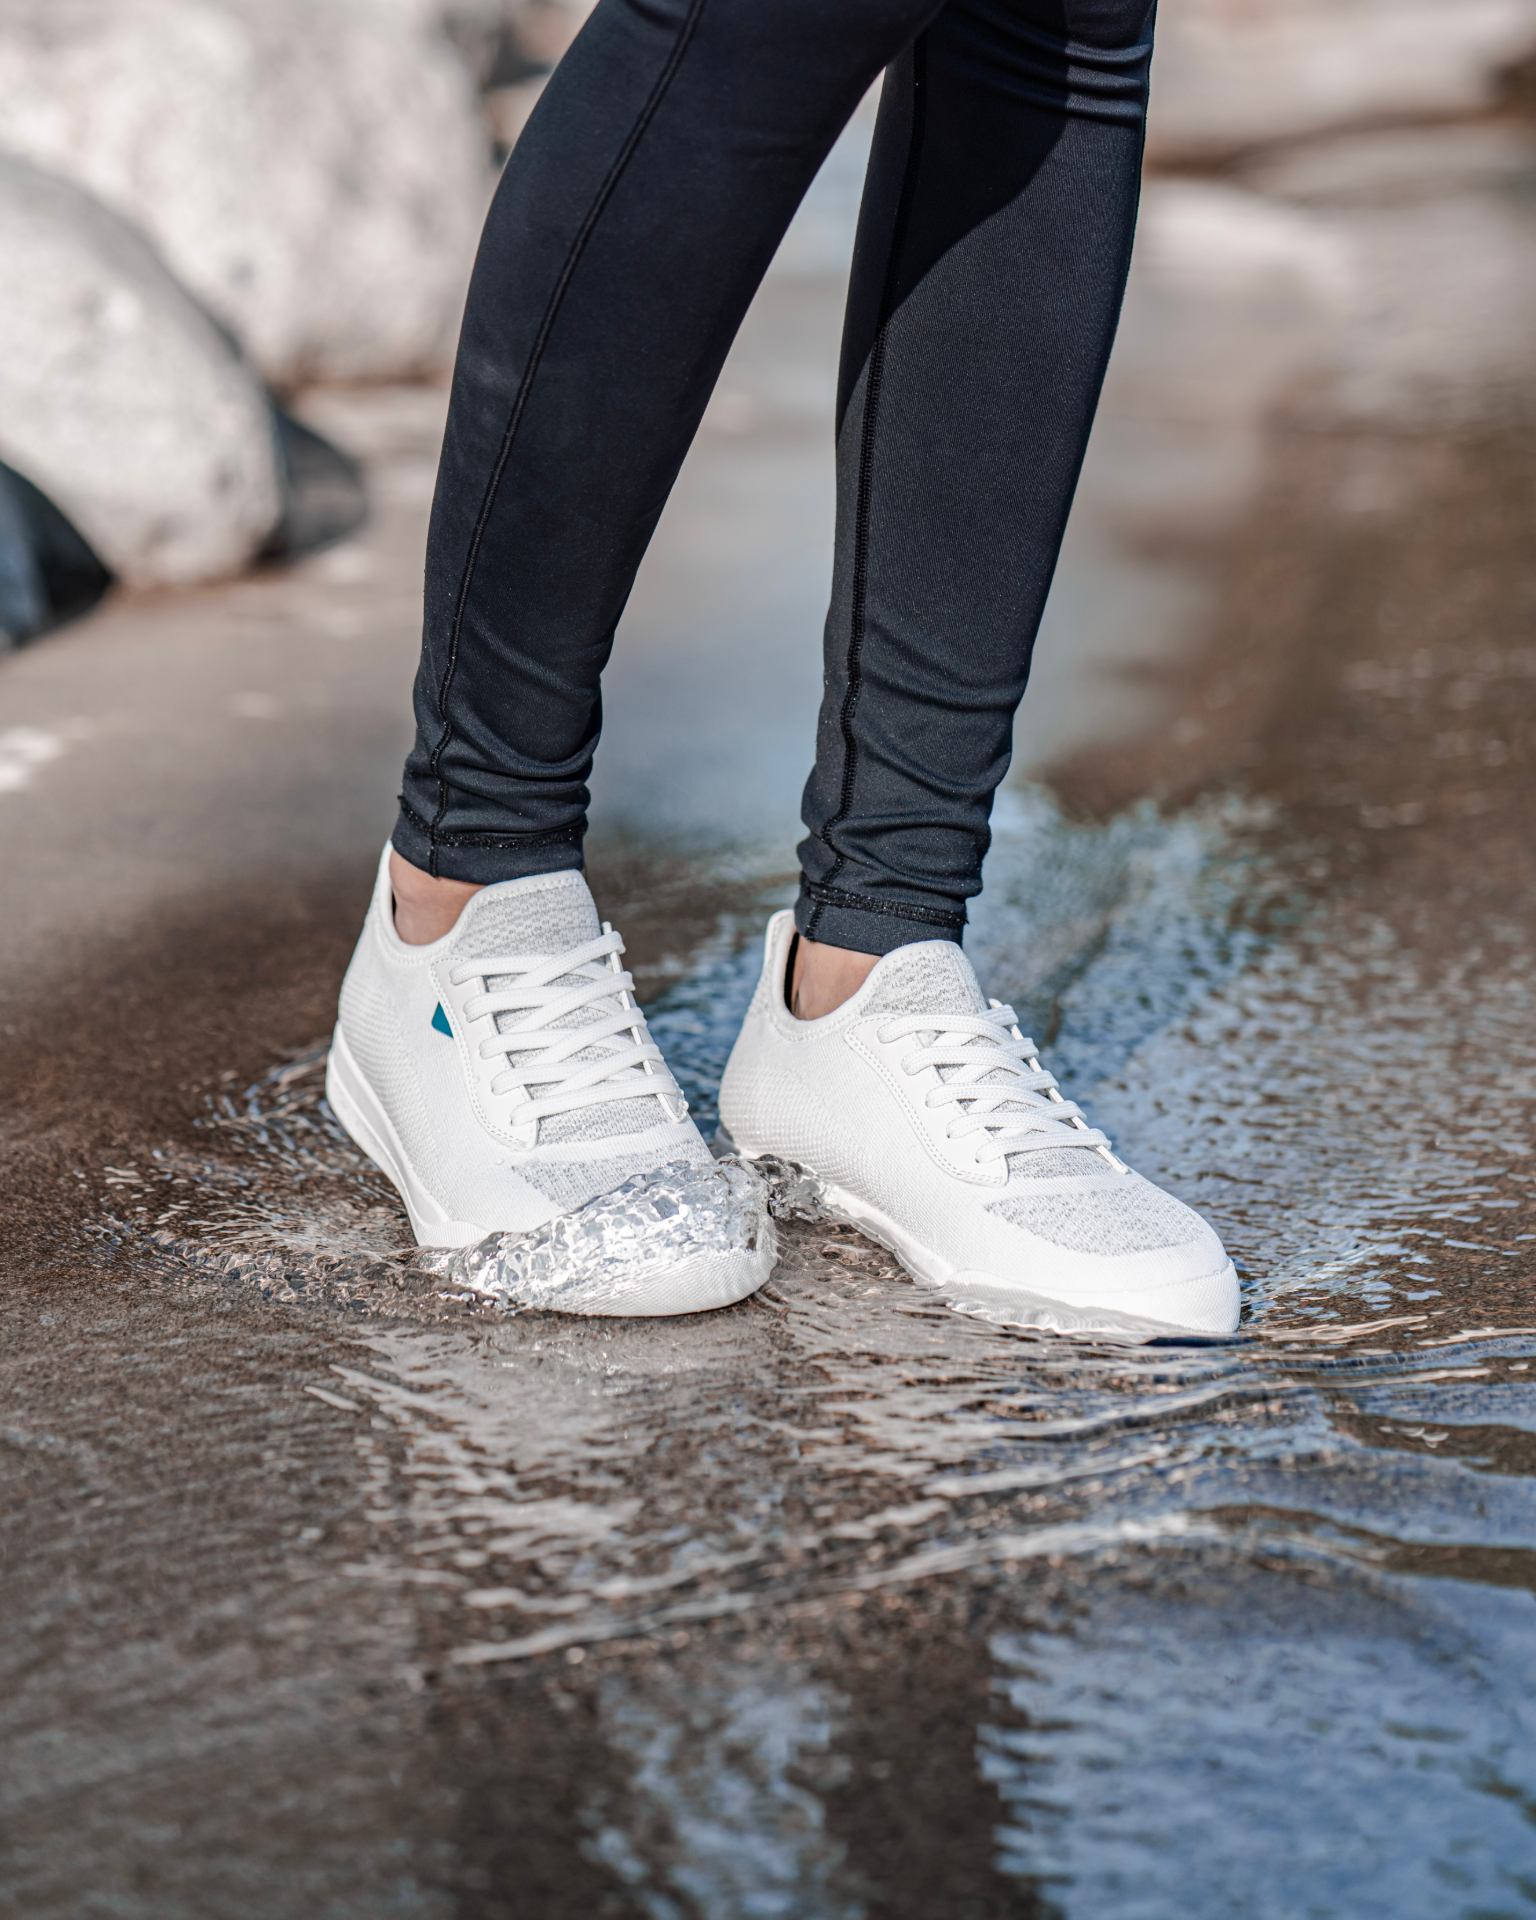 Are Vegan Shoes Waterproof?